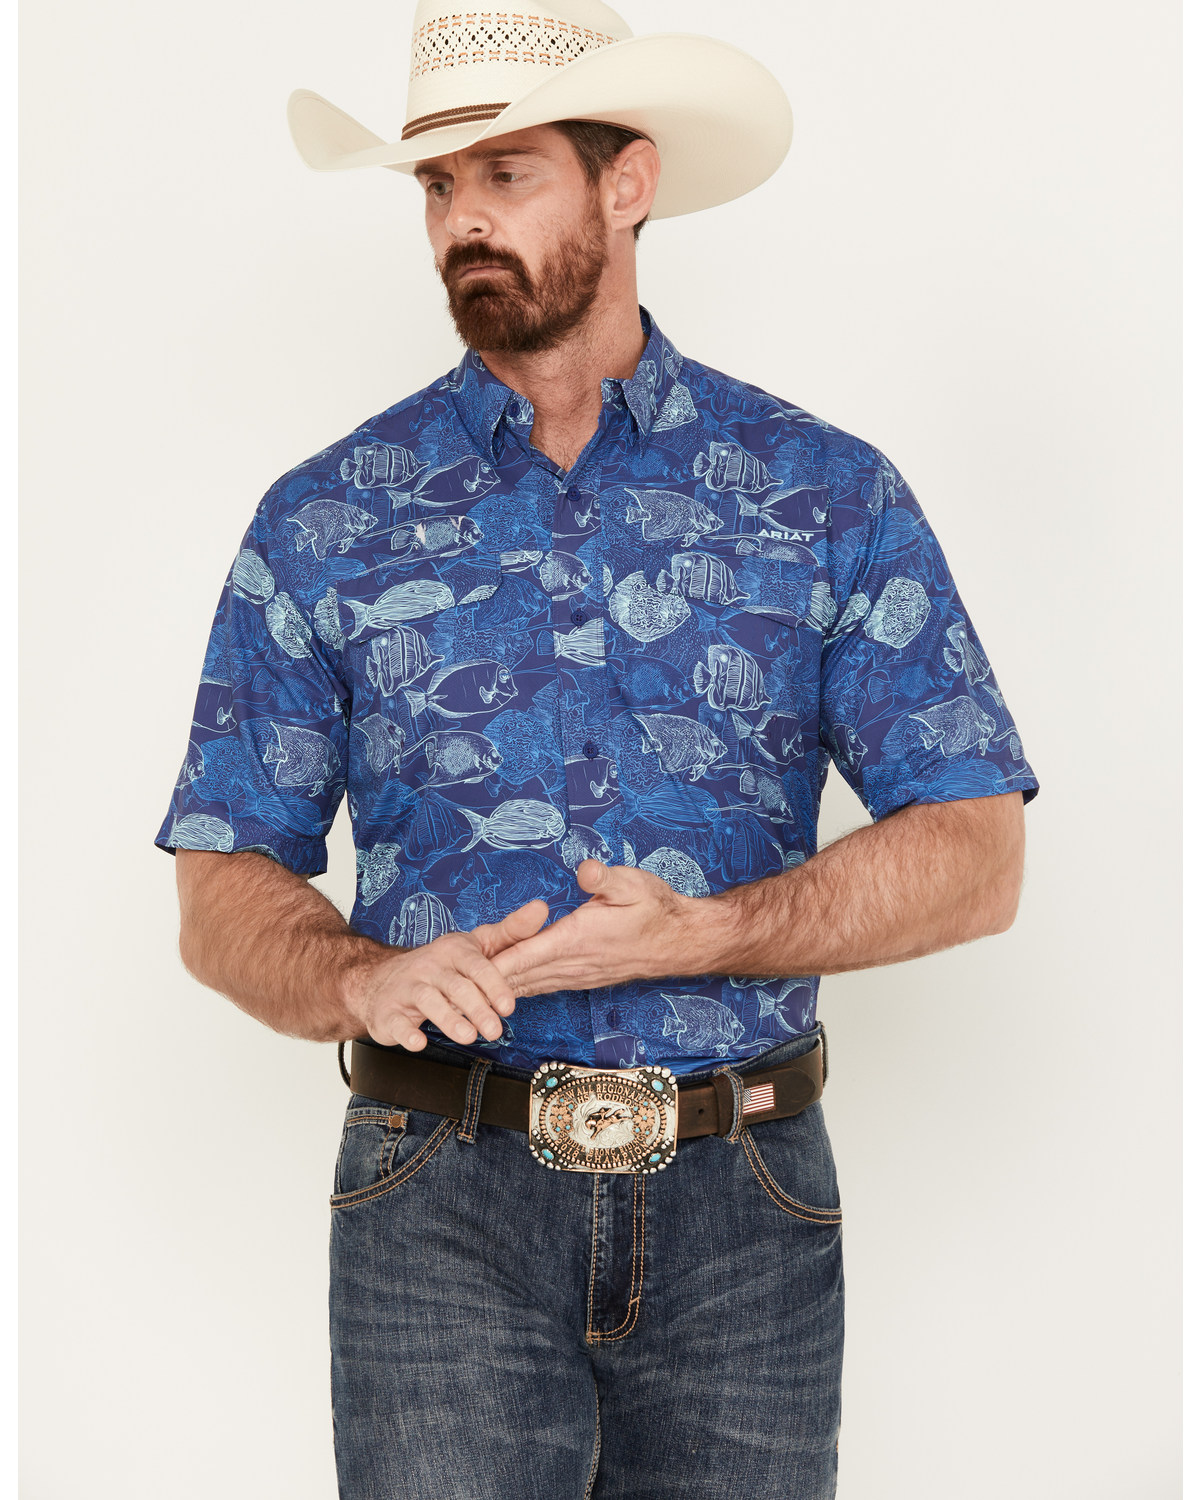 Ariat Men's VentTEK Outbound Fish Print Short Sleeve Button-Down Shirt - Tall